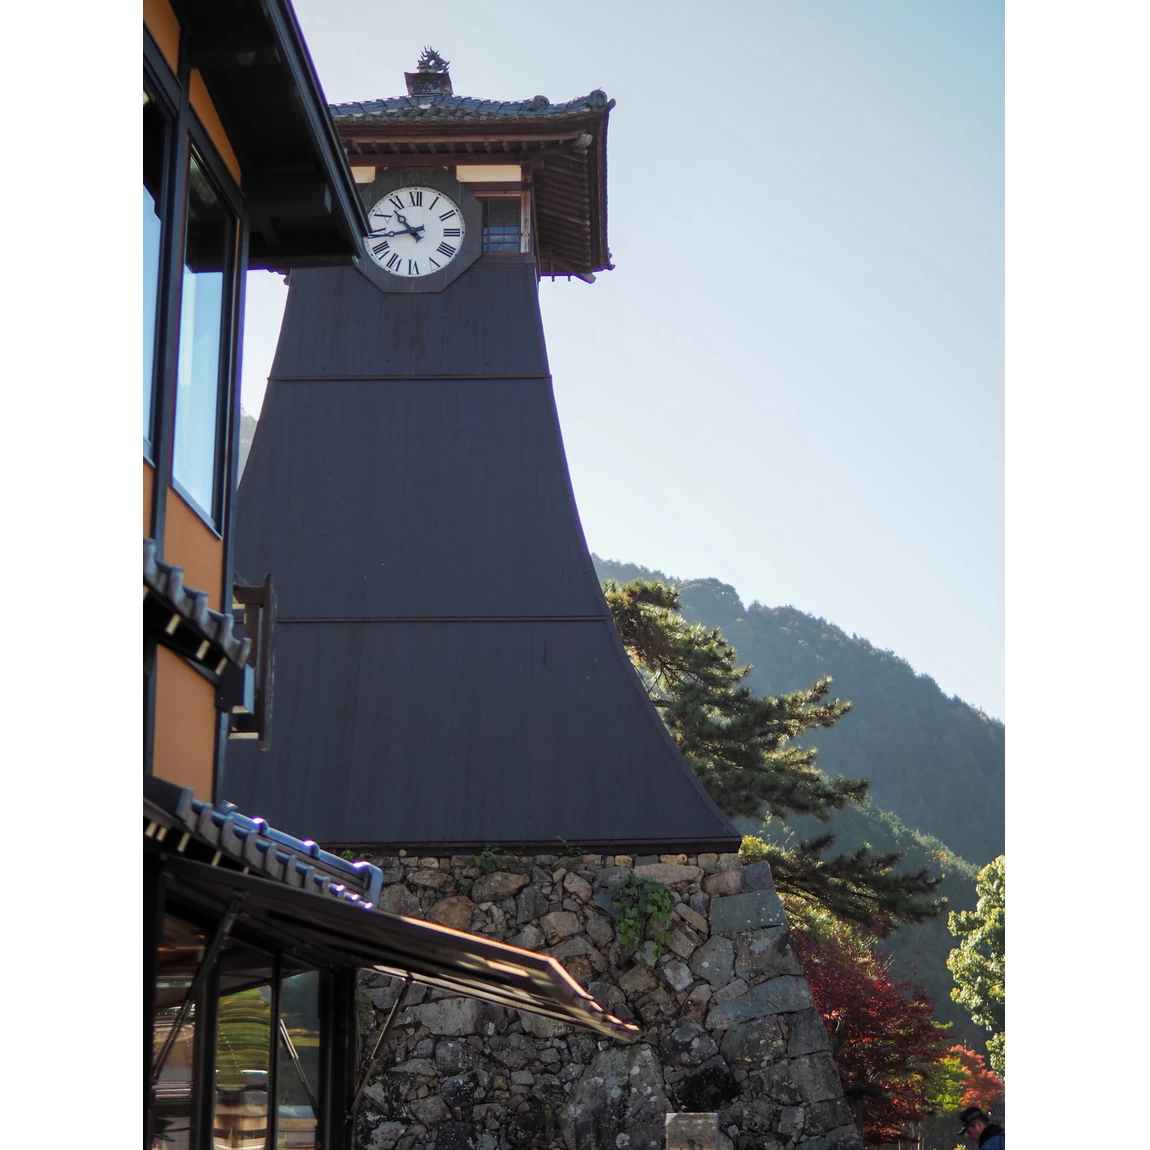 城下町・出石のシンボル辰鼓楼は日本で2番目に古い時計台